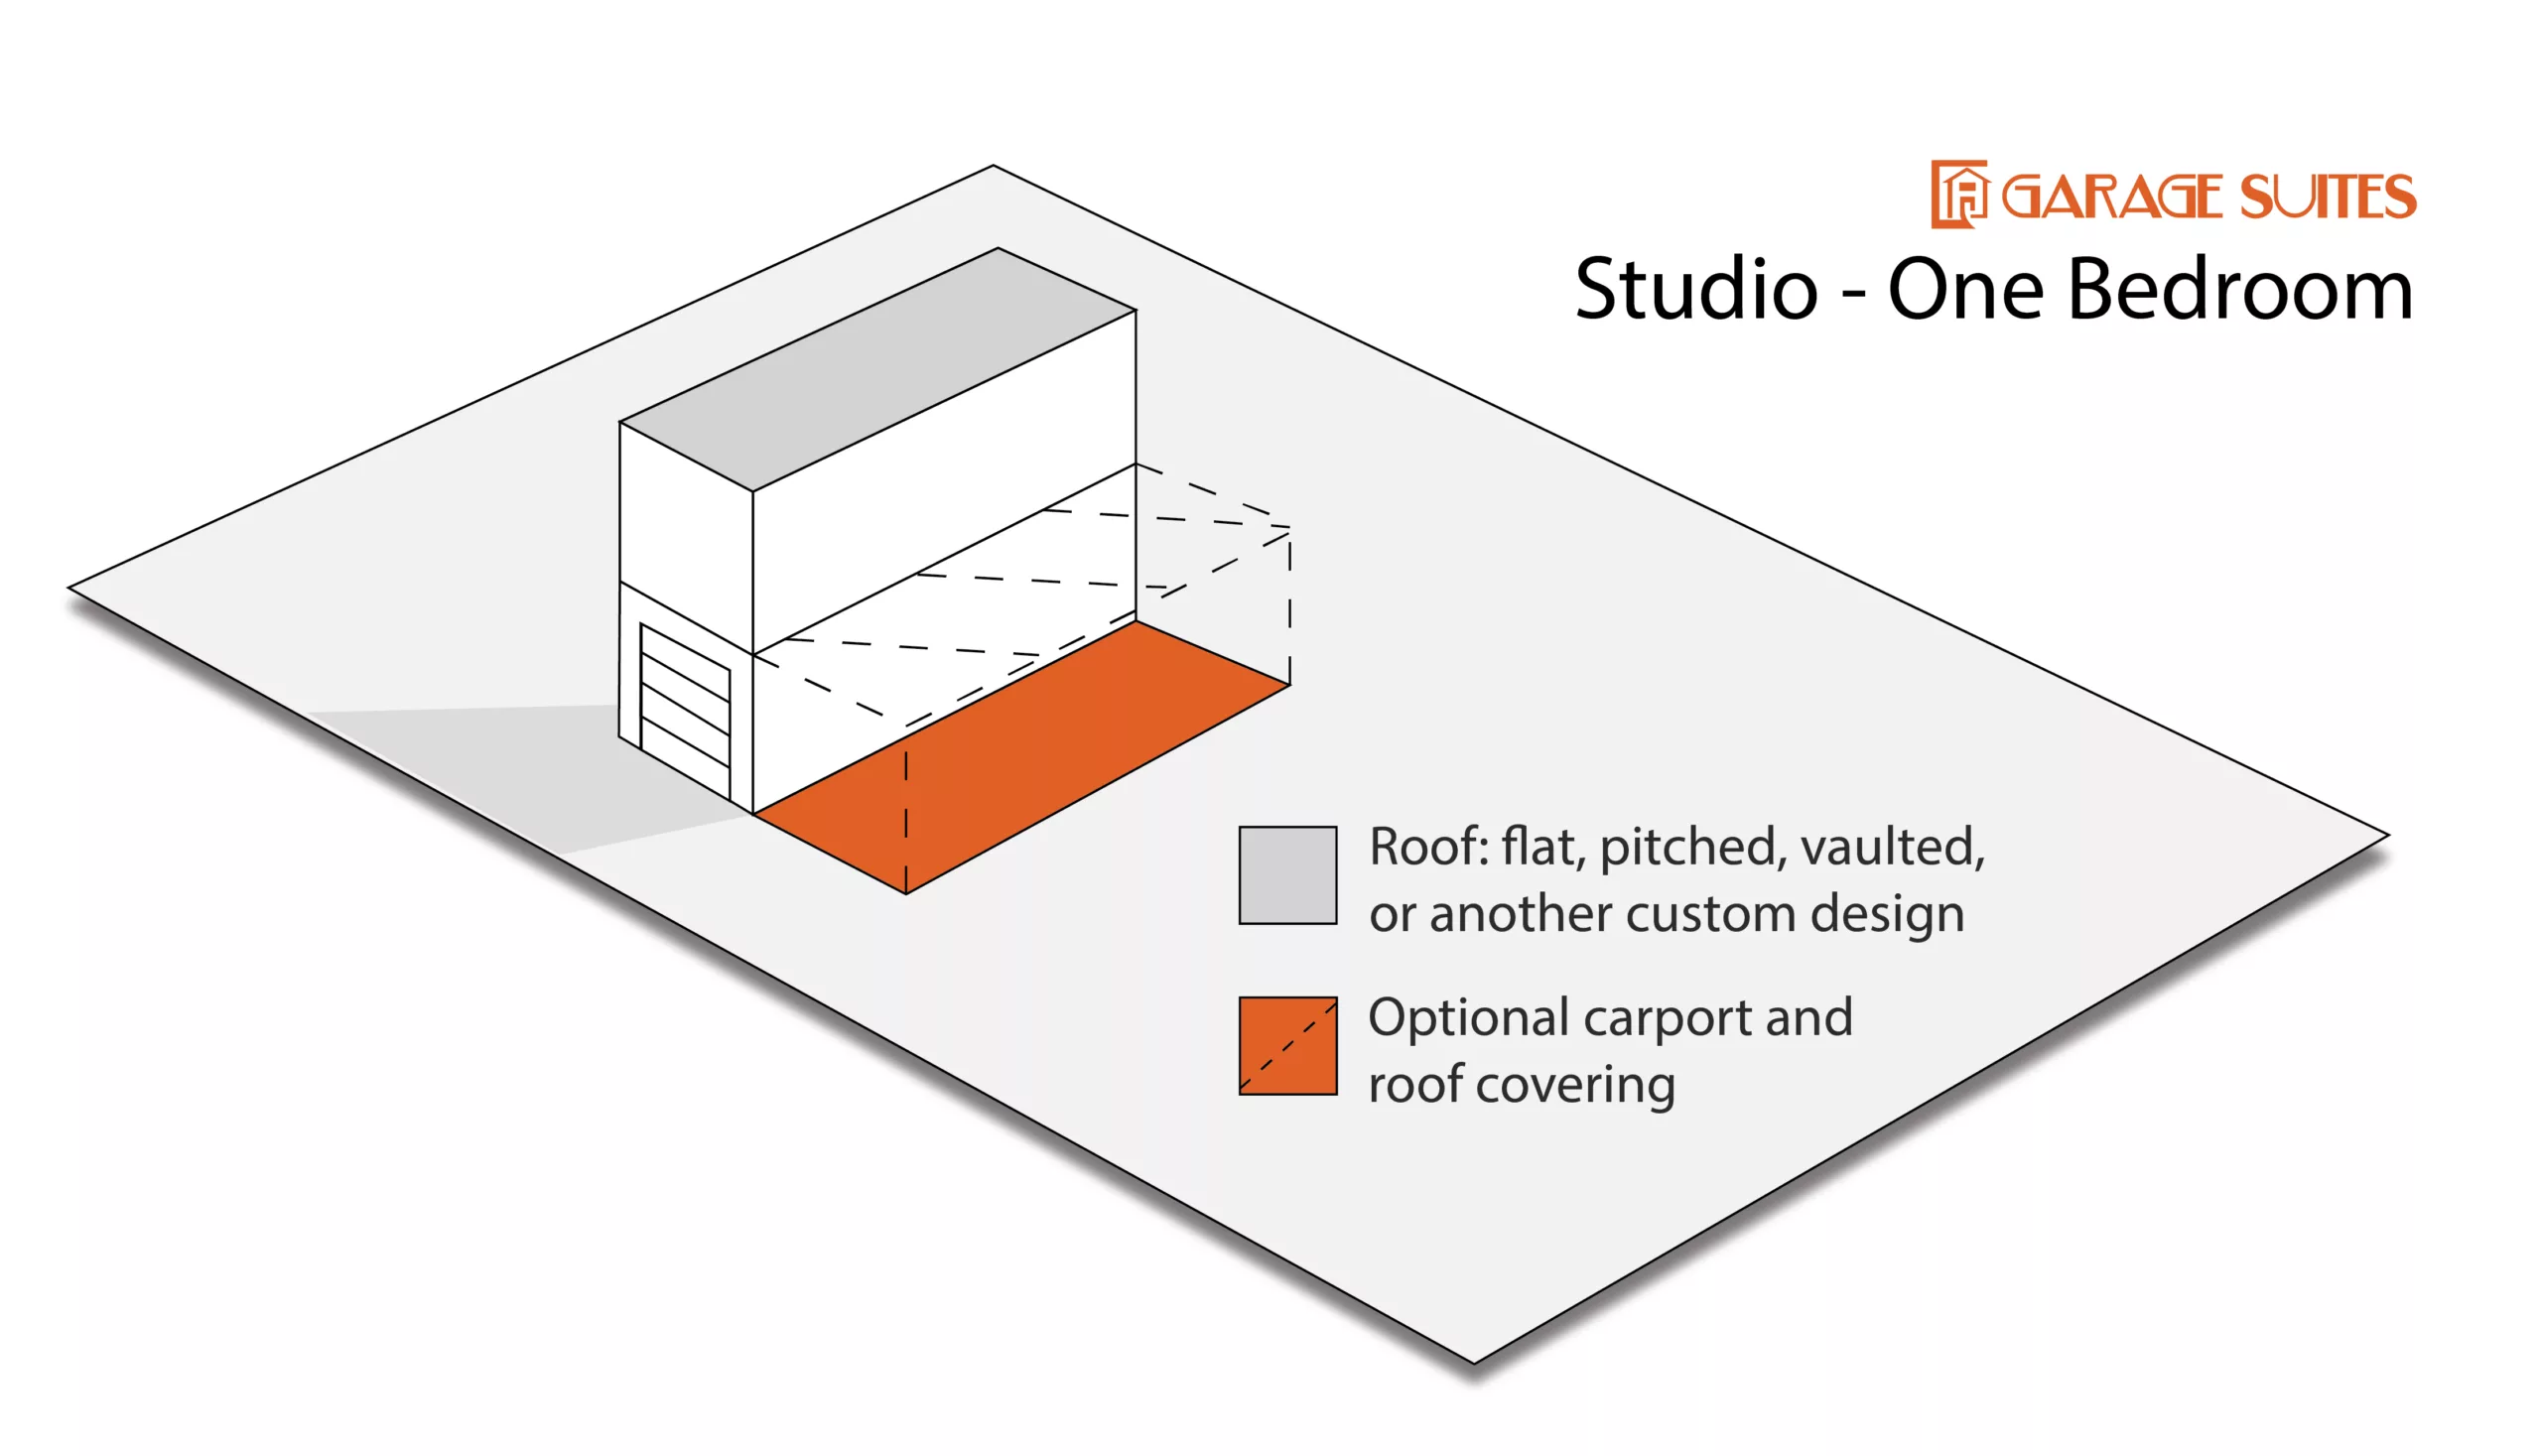 Garage Suite Configuration - Studio One Bedroom